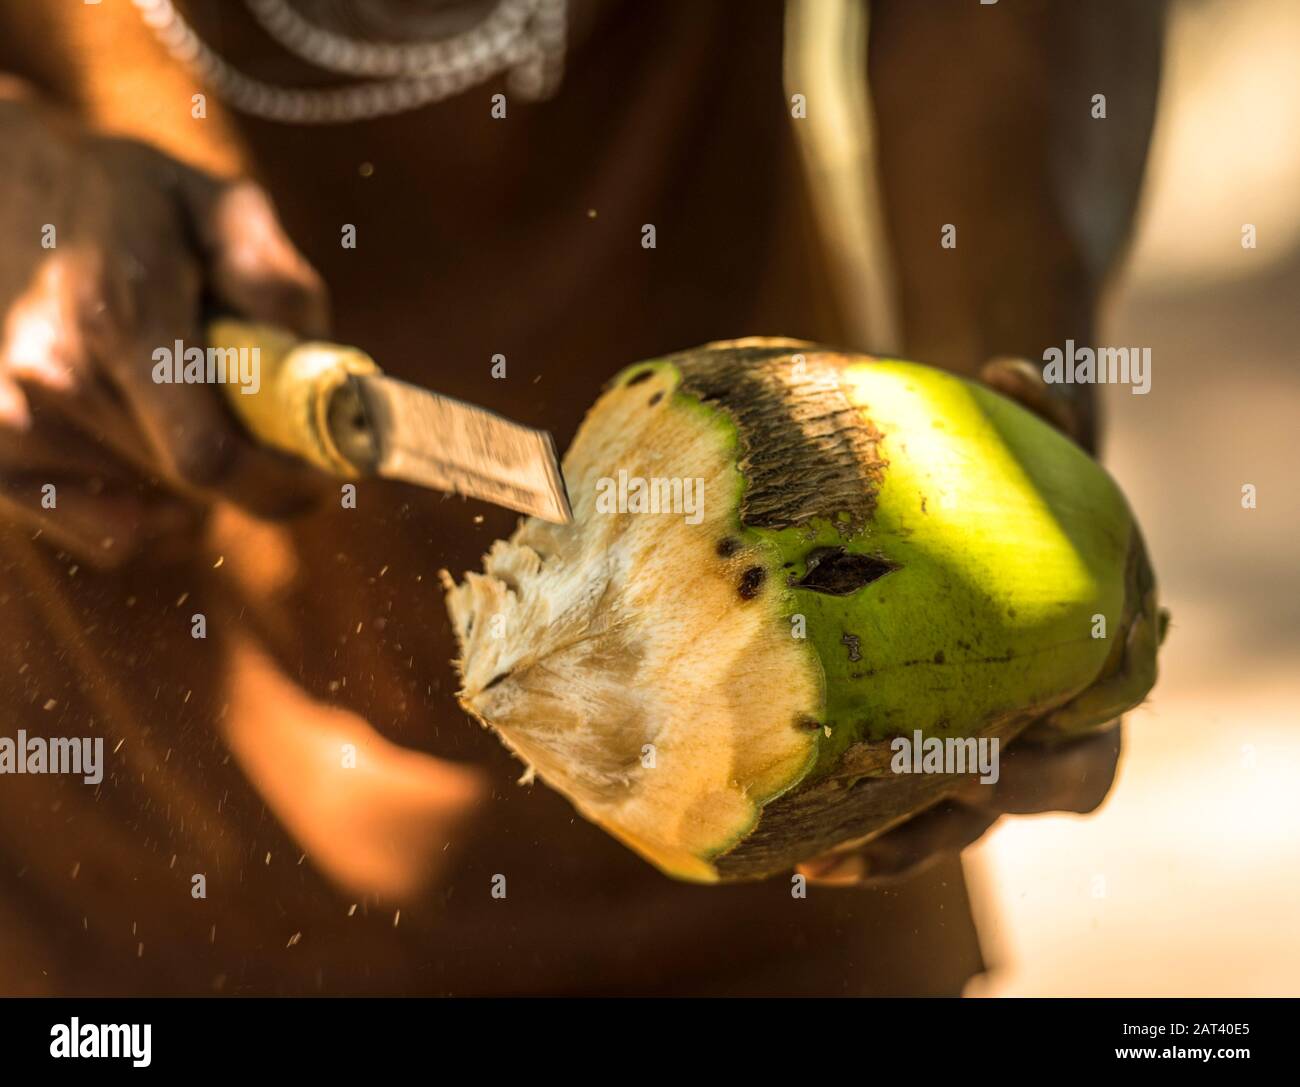 Zanzíbar. Después de escalar el árbol para buscar un coco, las rodajas de agricultor abrir la fruta con una hoja de aspecto peligroso, lo pasa alrededor de manera que cada s Foto de stock